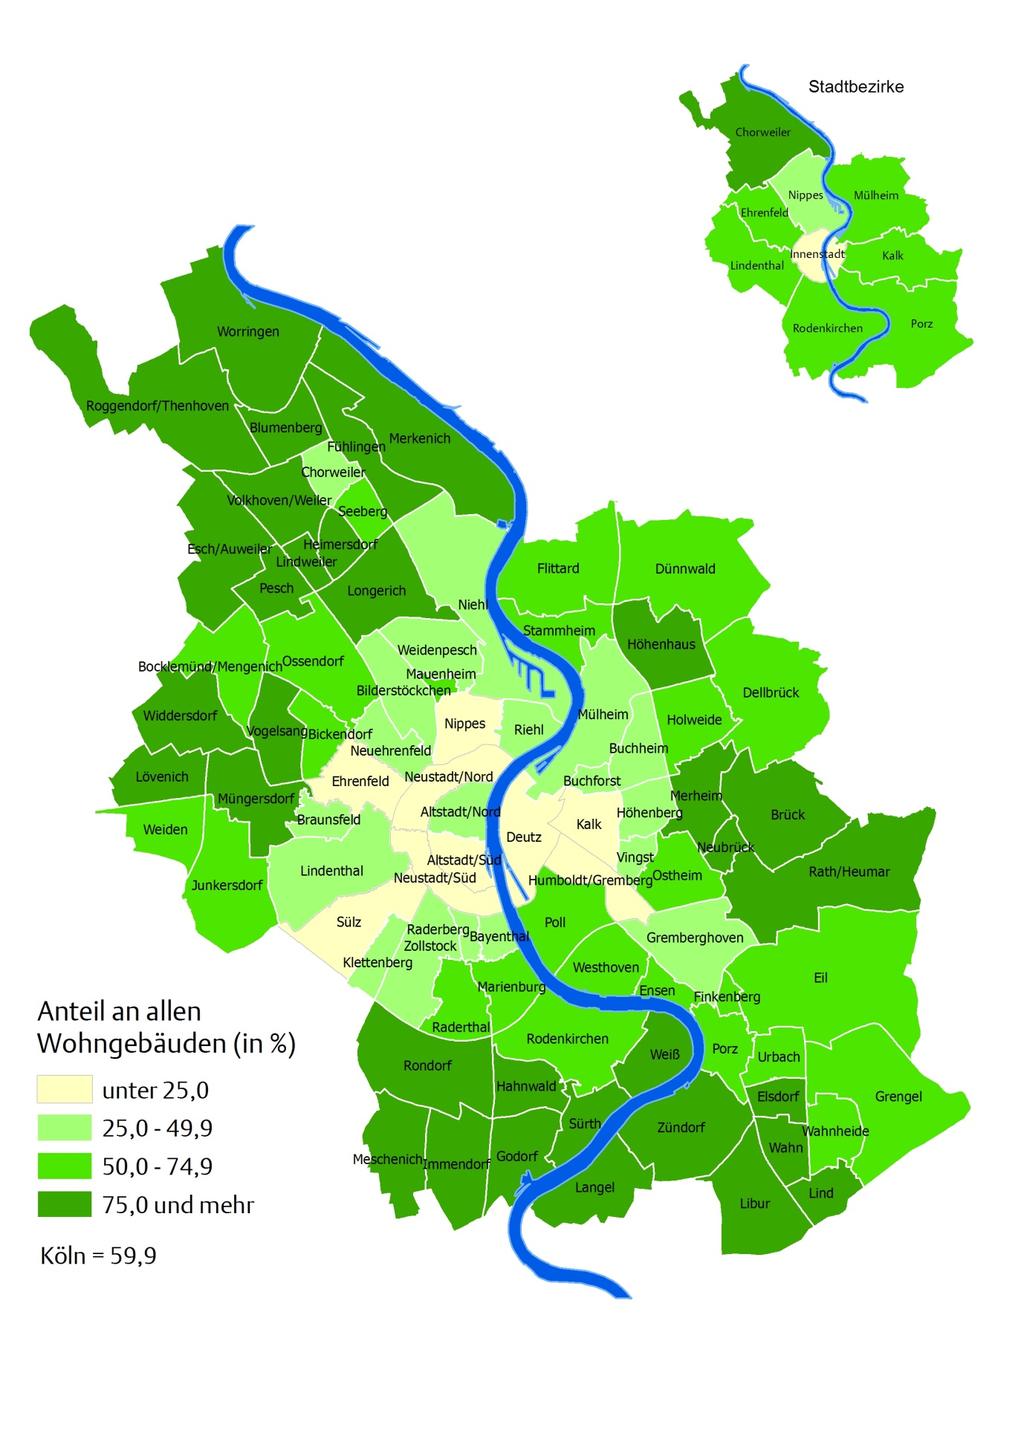 Kölner Statistische Nachrichten - 1/2015 Seite 115 Karte 301